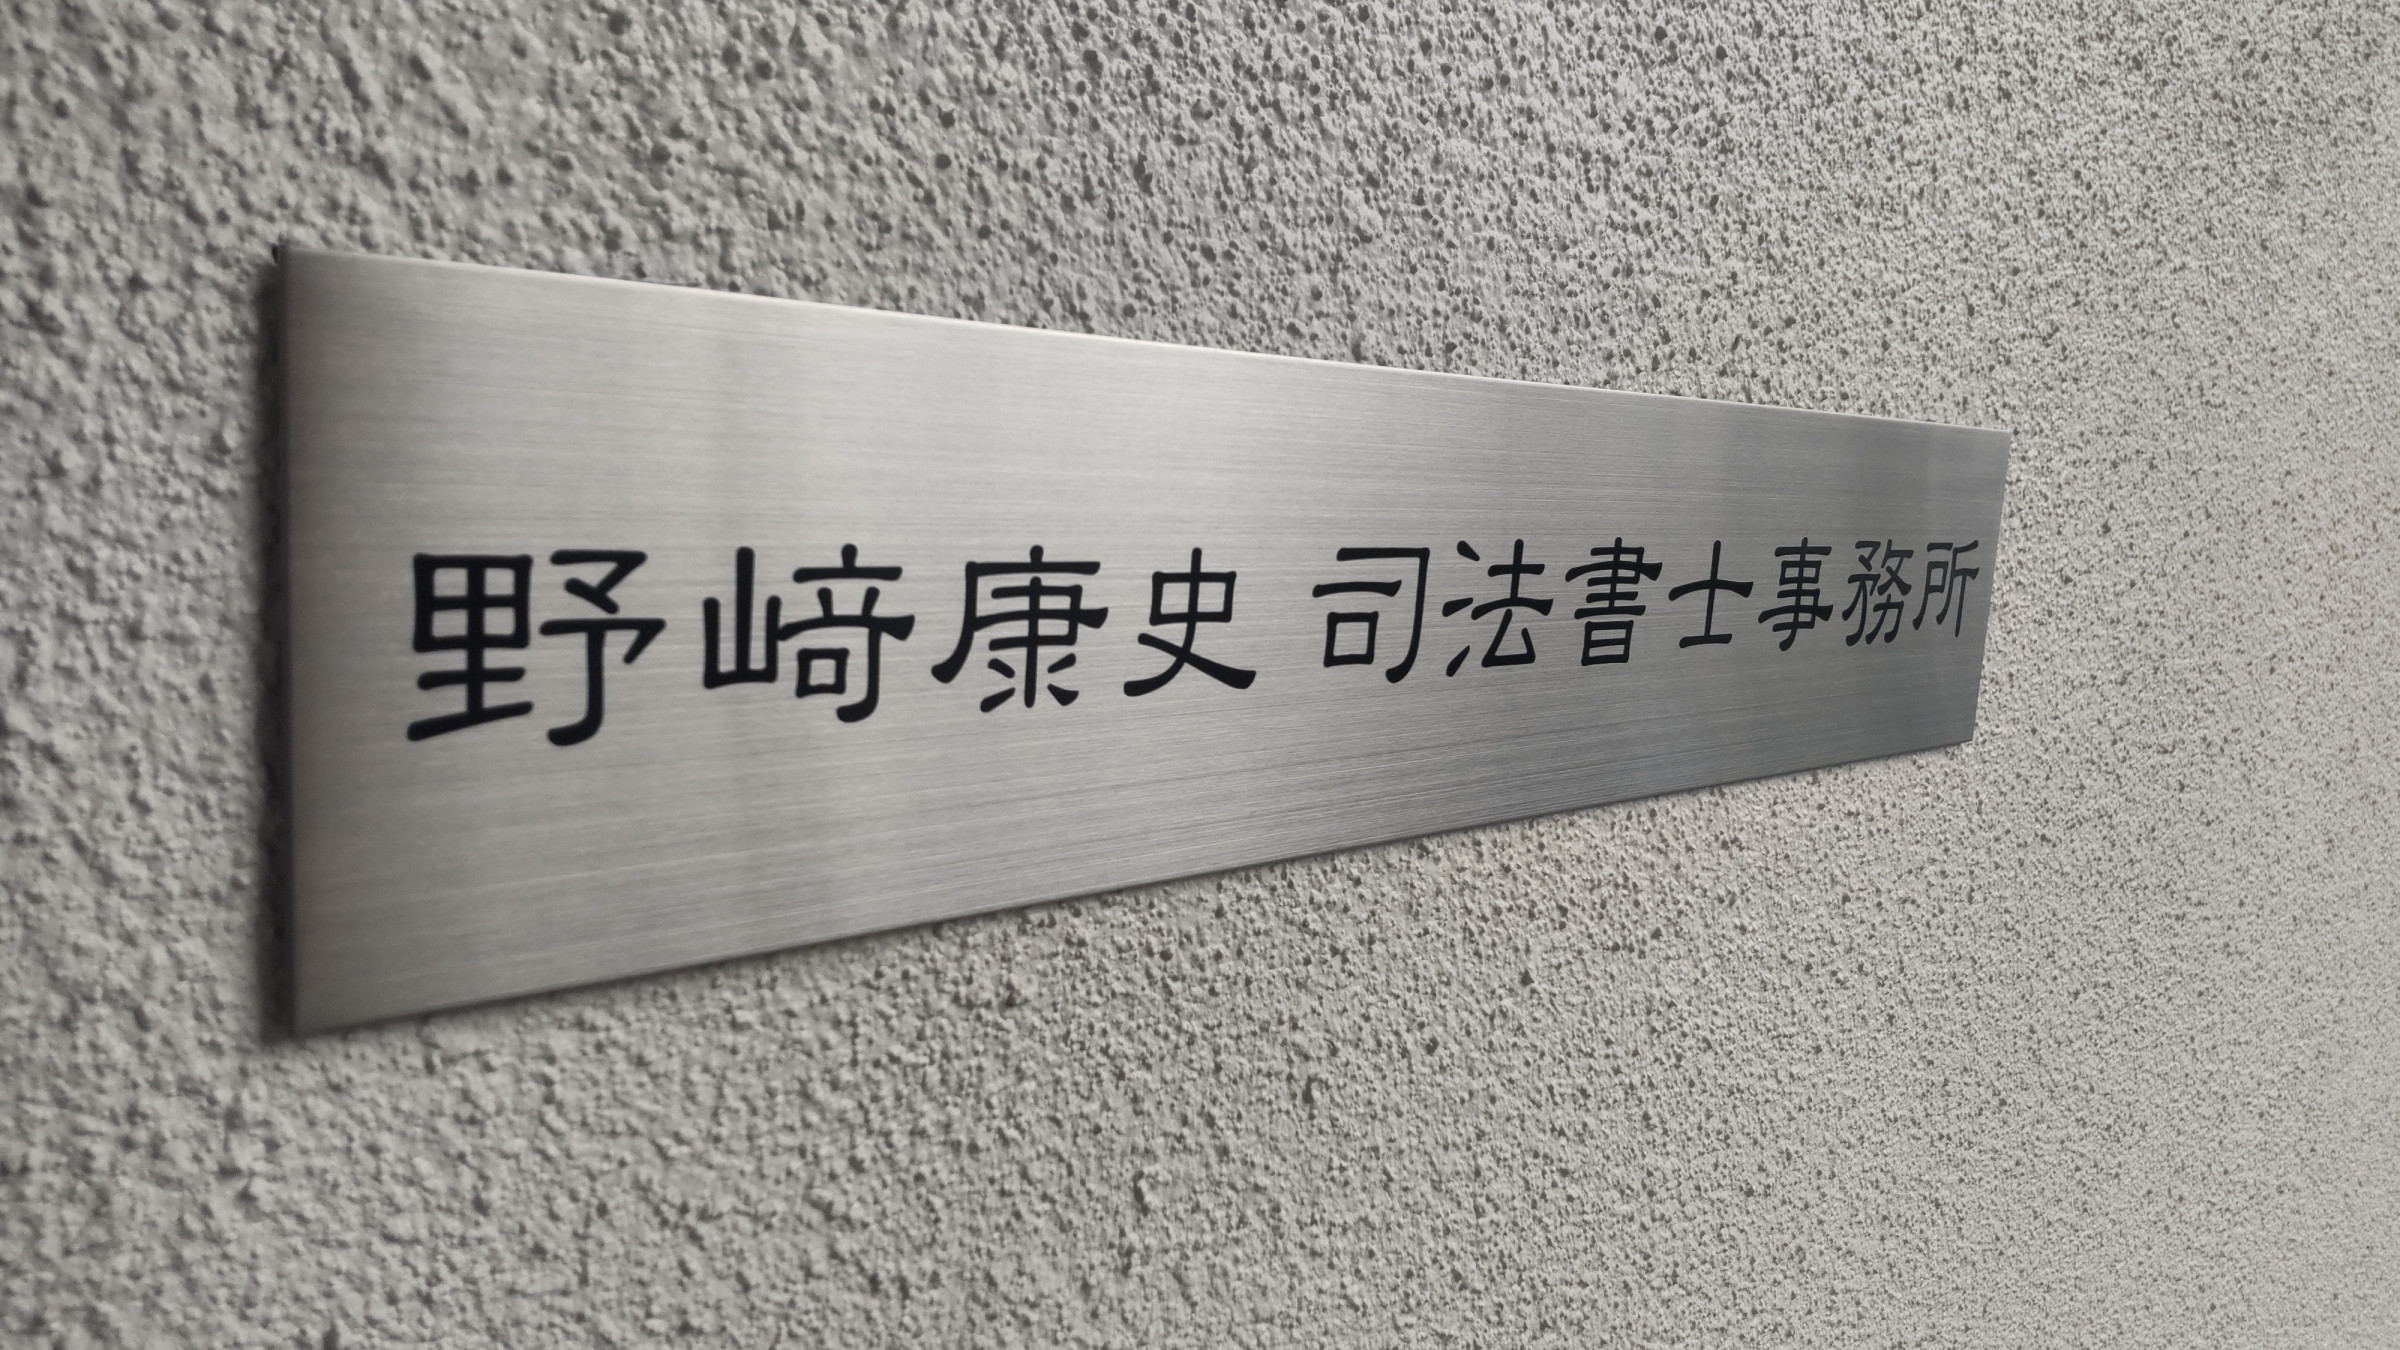 上野原市で、一人の司法書士が運営する小さな事務所です。